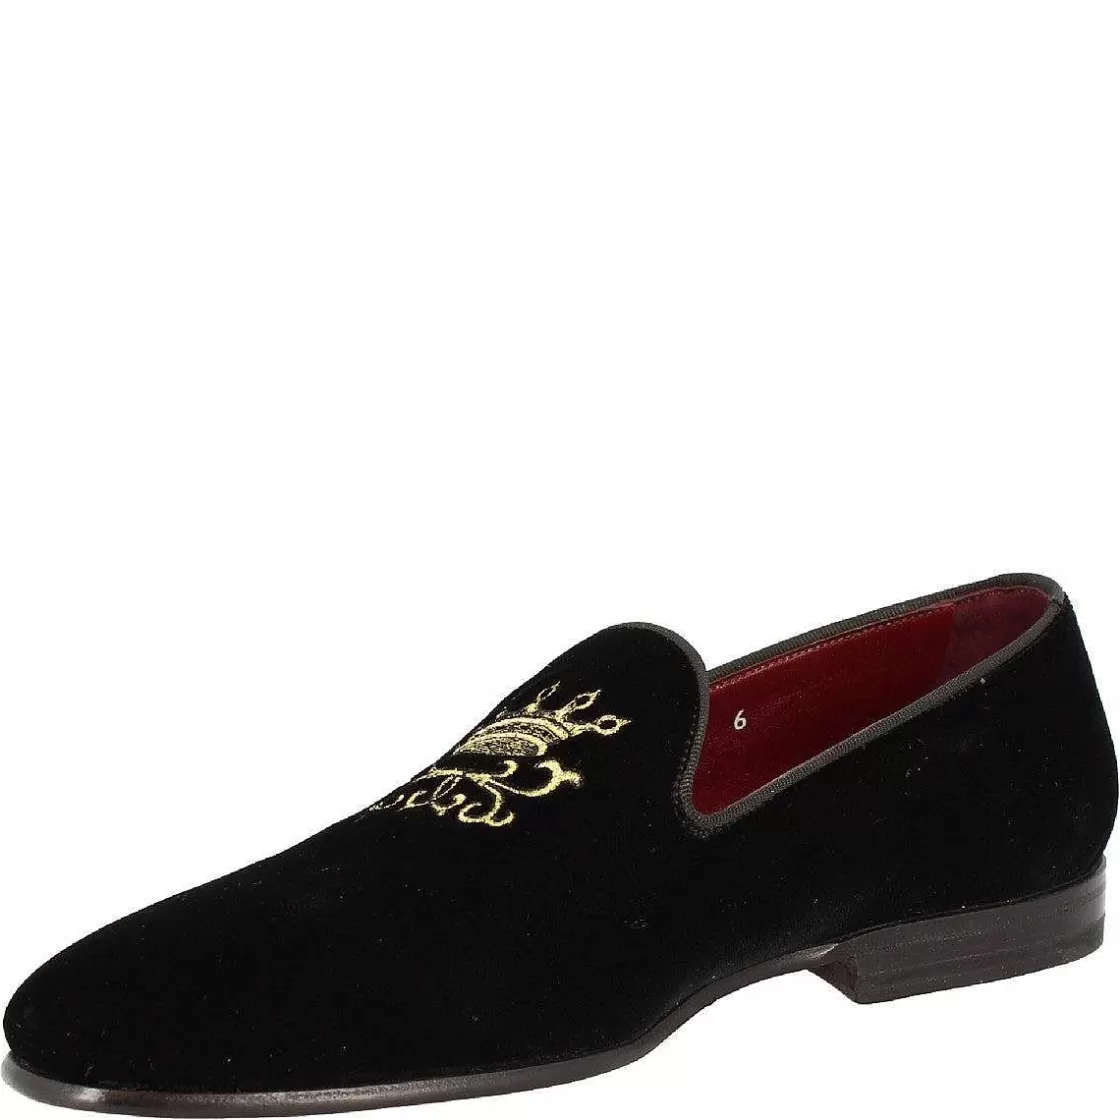 Leonardo Men'S Handmade Elegant Round Toe Loafers In Black Velvet With Golden Details Cheap